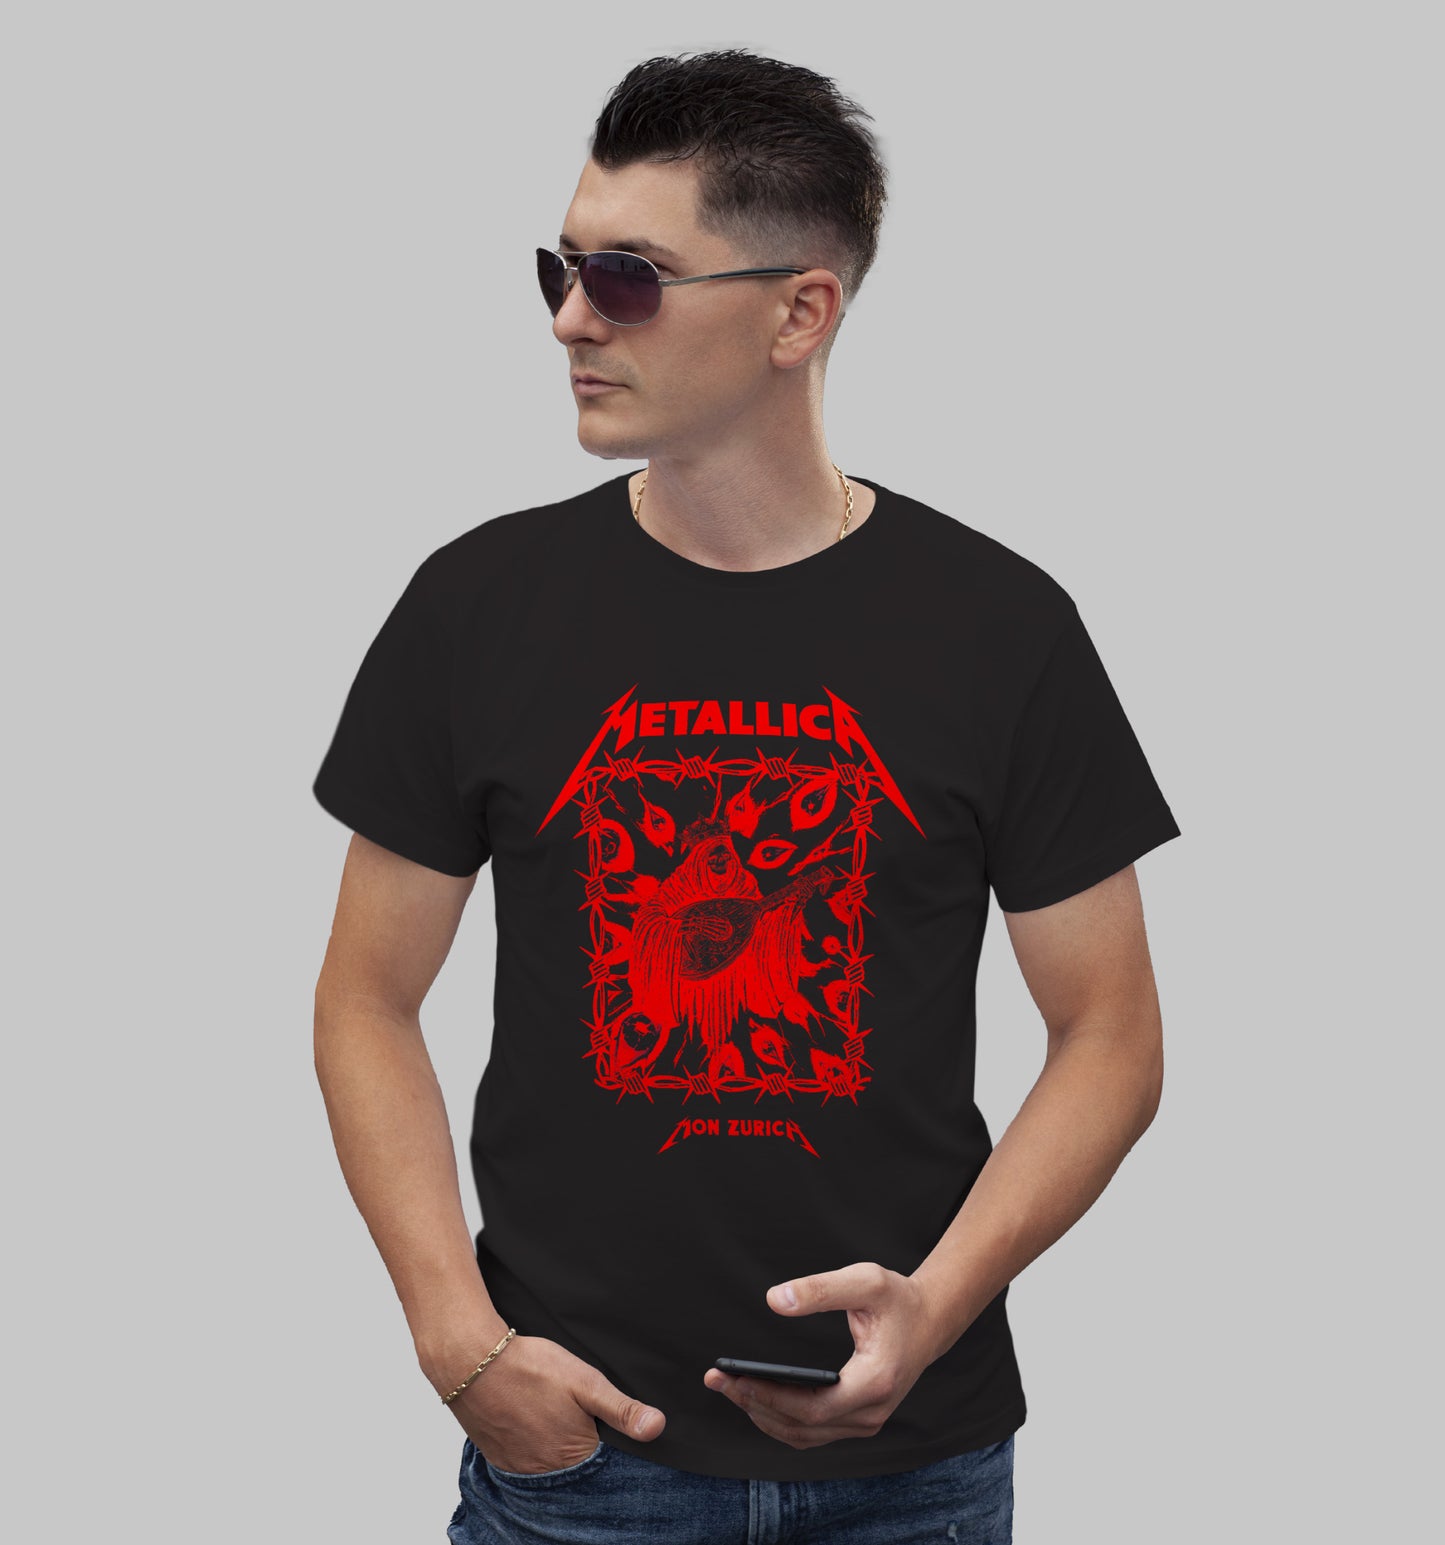 DEATH TUNE RED (METALLICA) T-shirt in Dark - Mon Zurich Originals